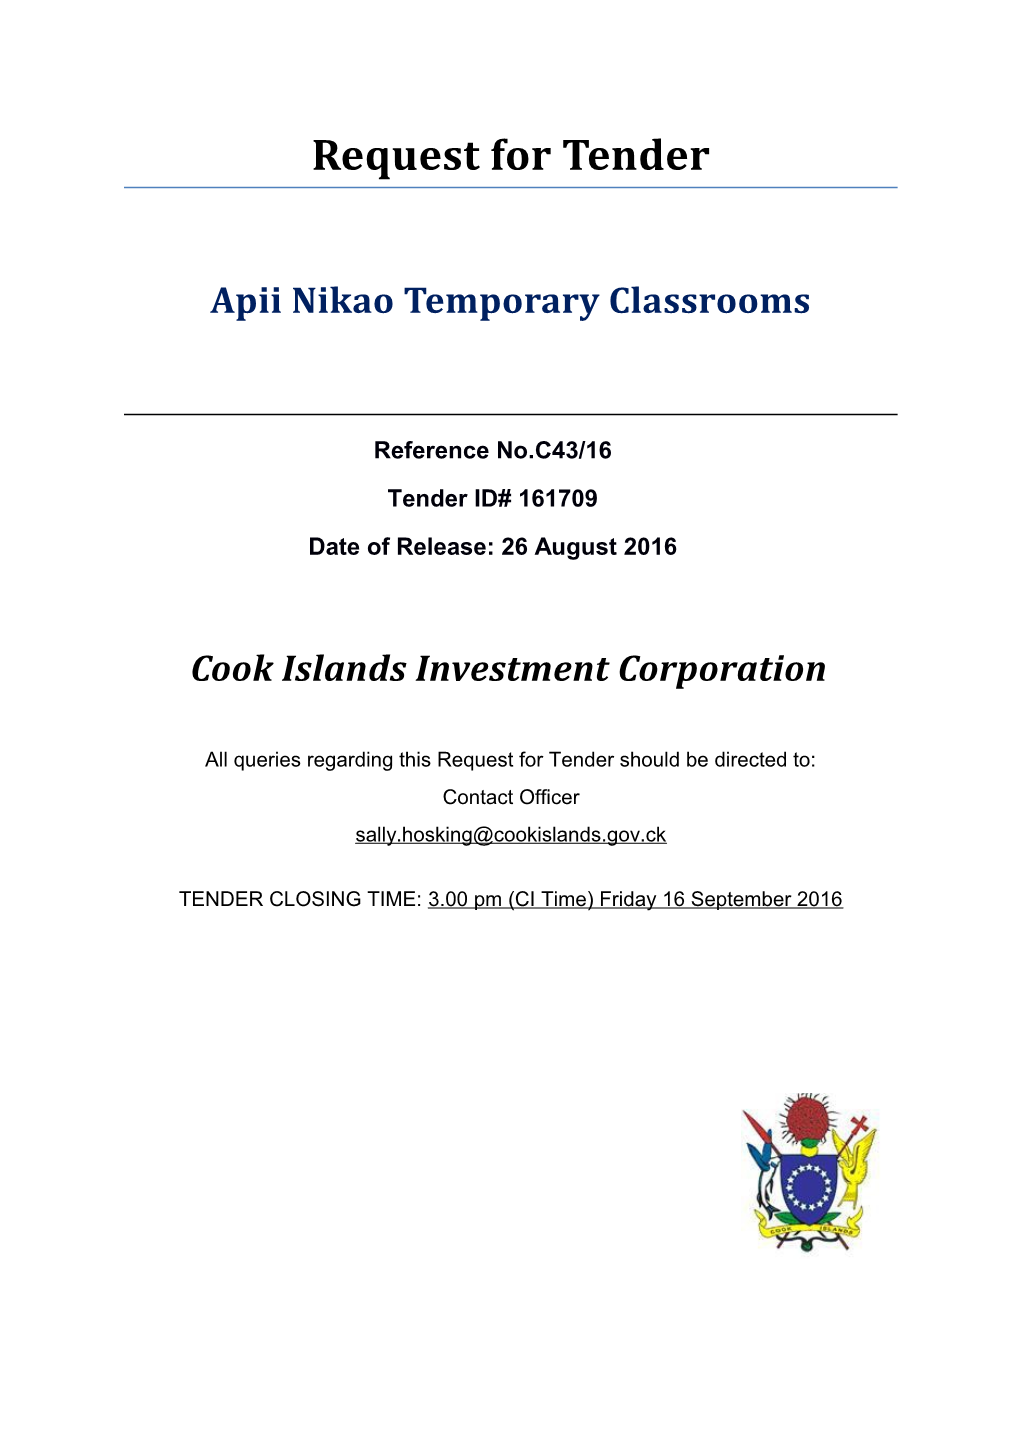 RFT Apii Nikao Temporary Classrooms